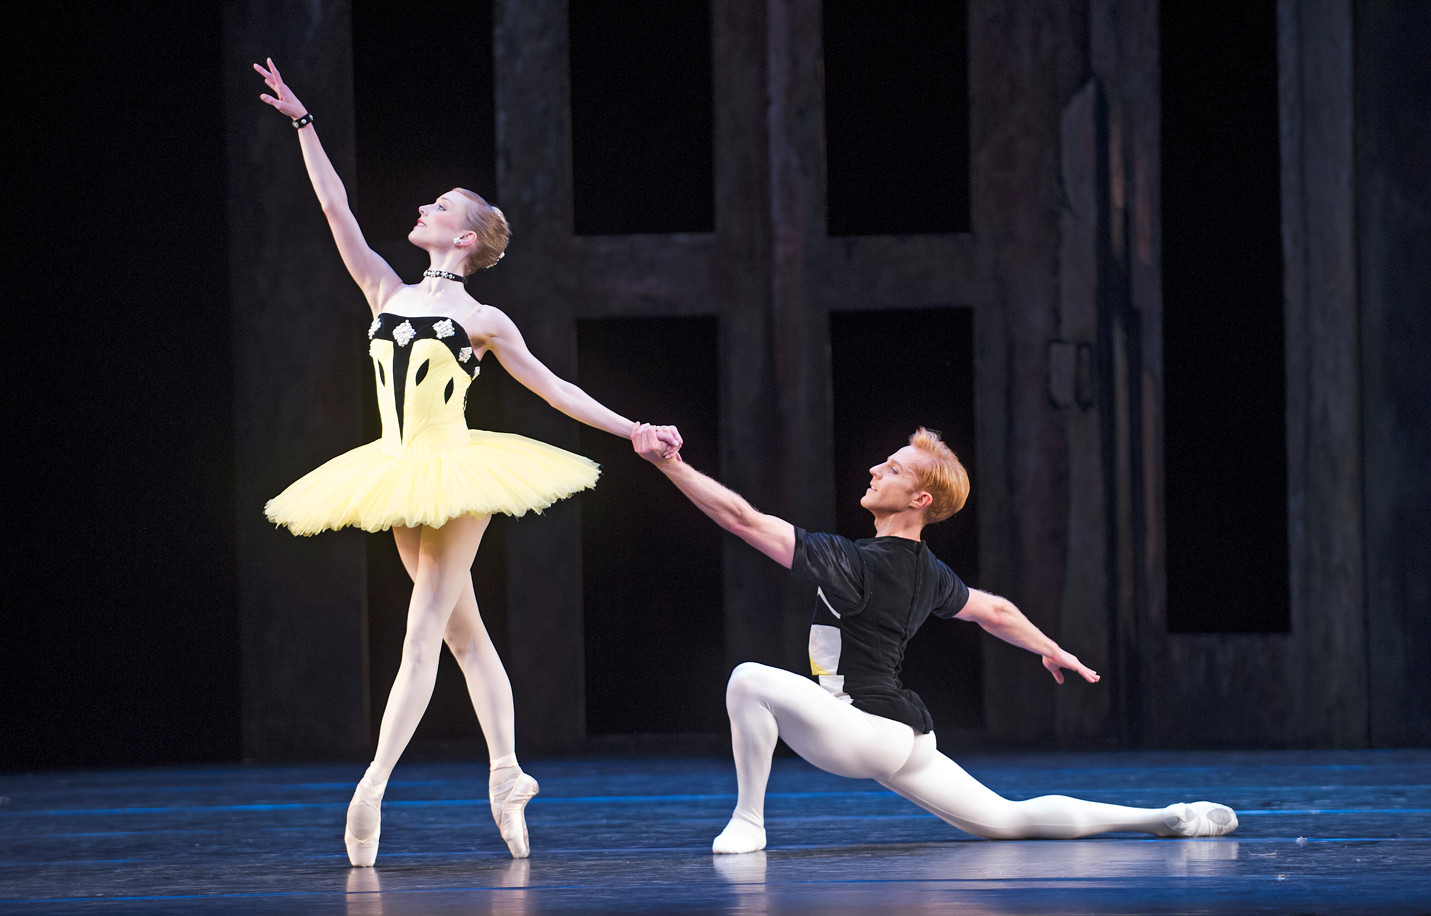 Royal ballet celebrates scènes de ballet